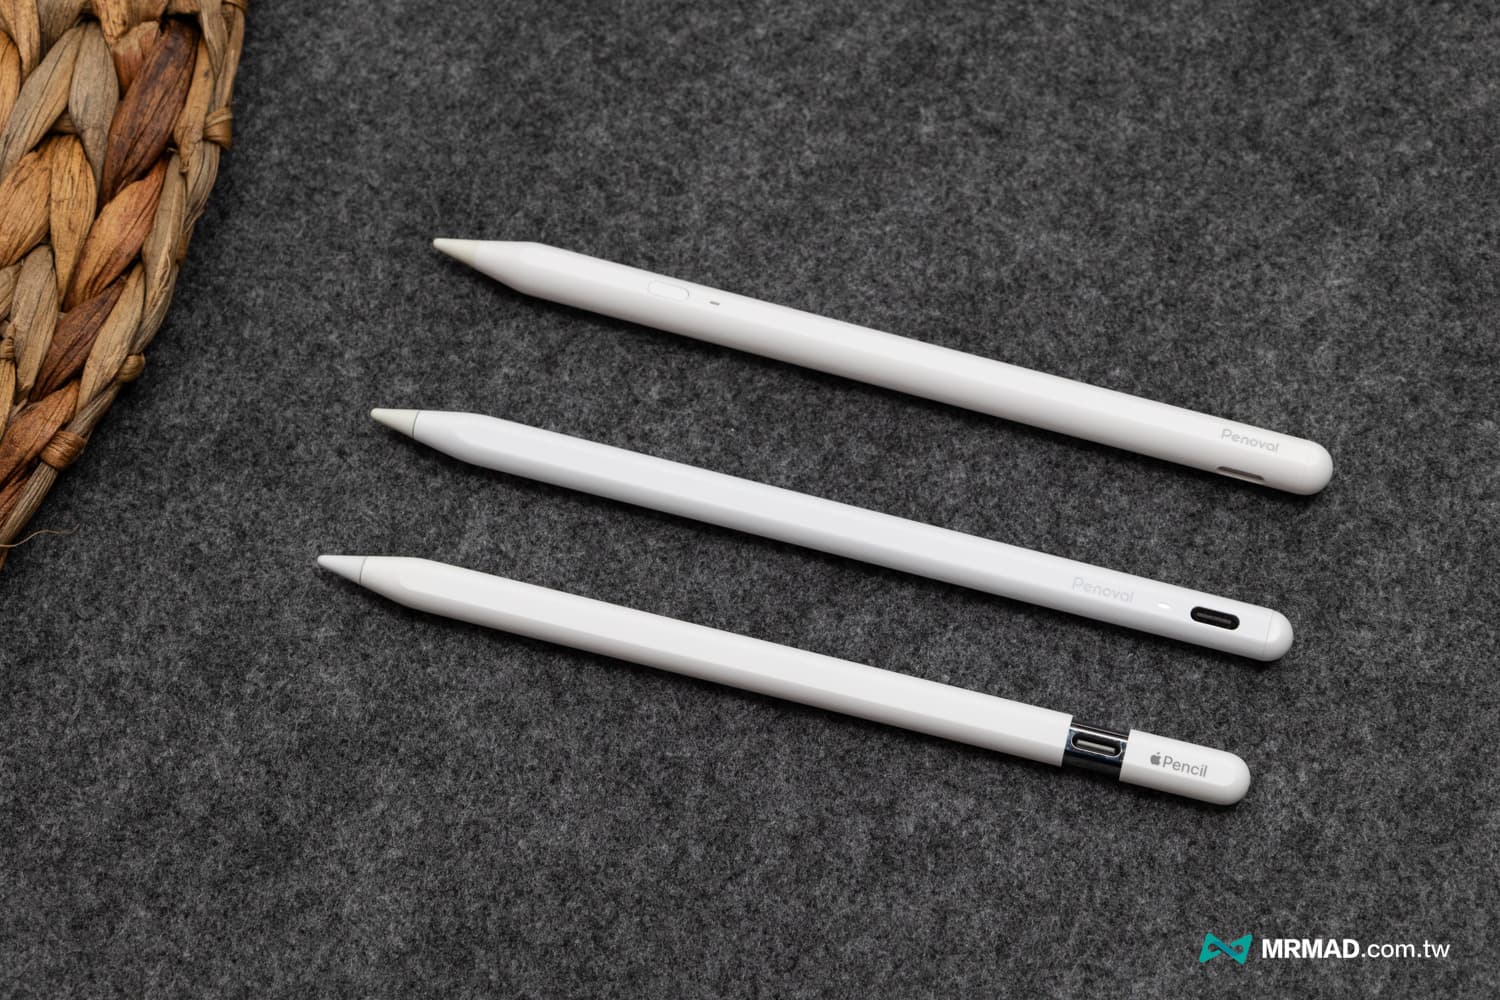 副廠Apple Pencil觸控筆功能更強且價格更便宜